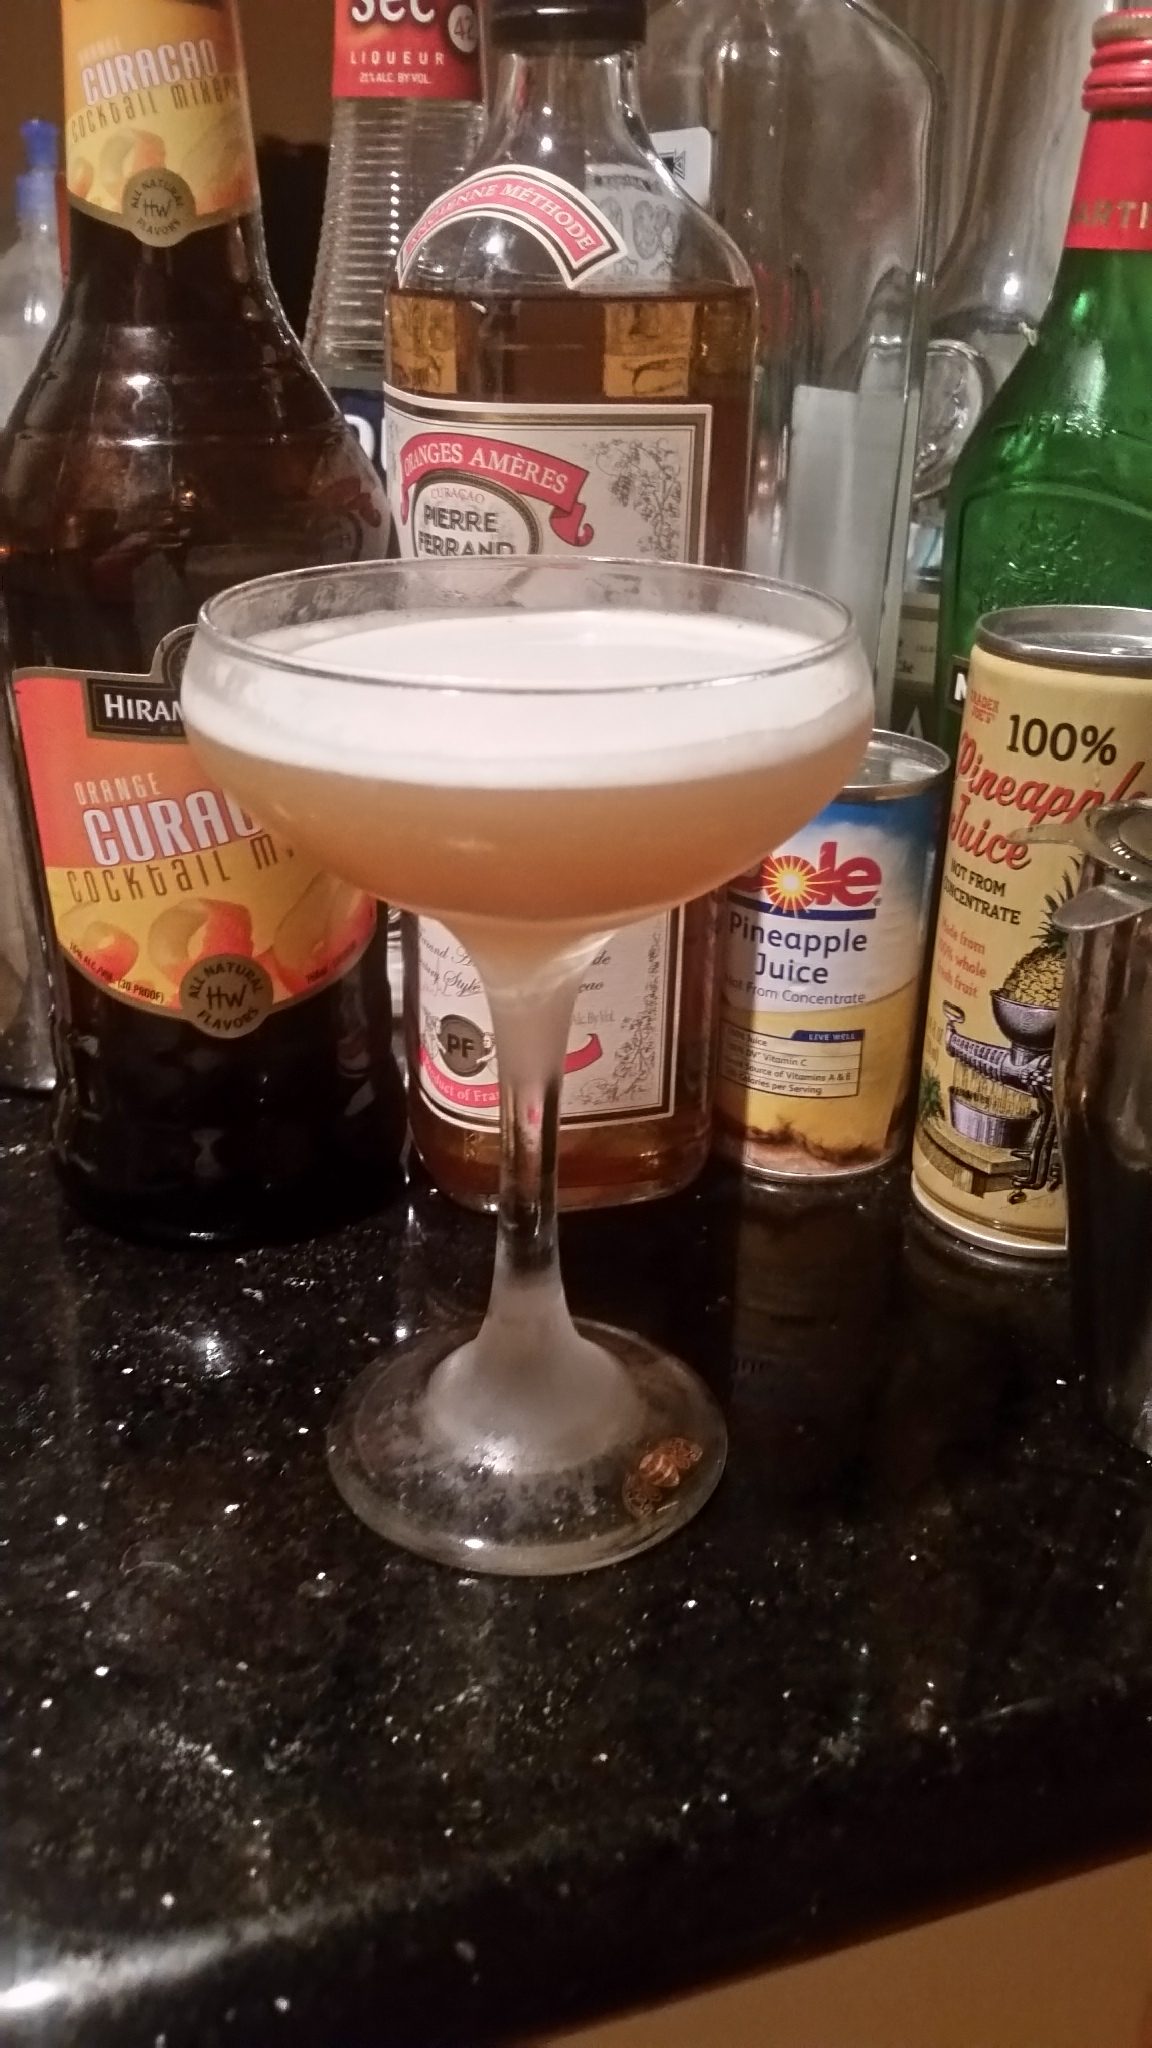 The Park Avenue Cocktail.